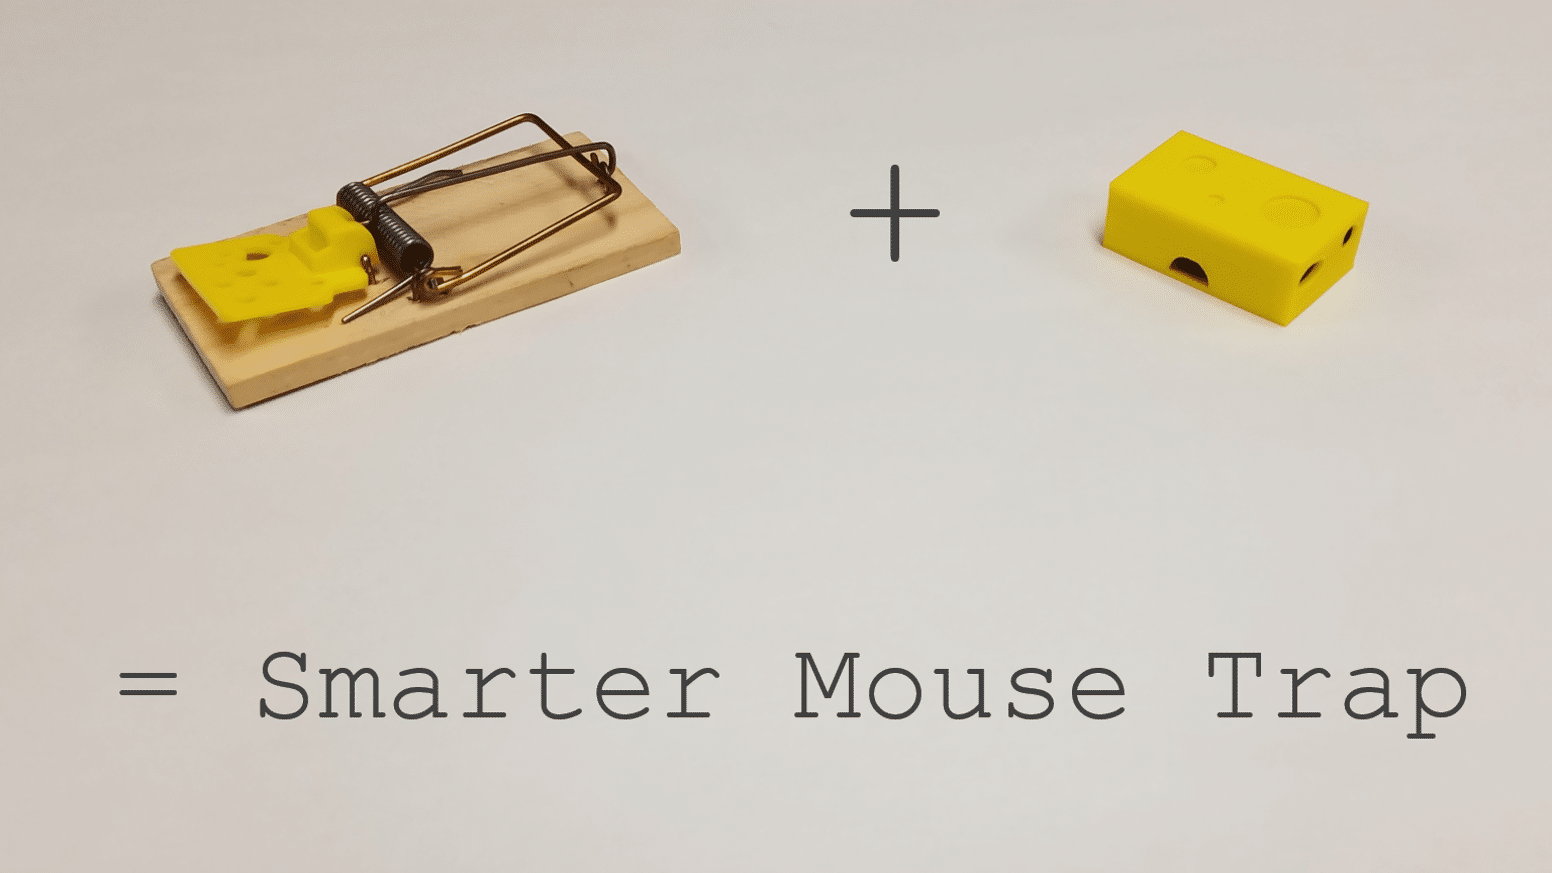 ¿Realmente es necesaria una trampa para ratones con tecnología smart?